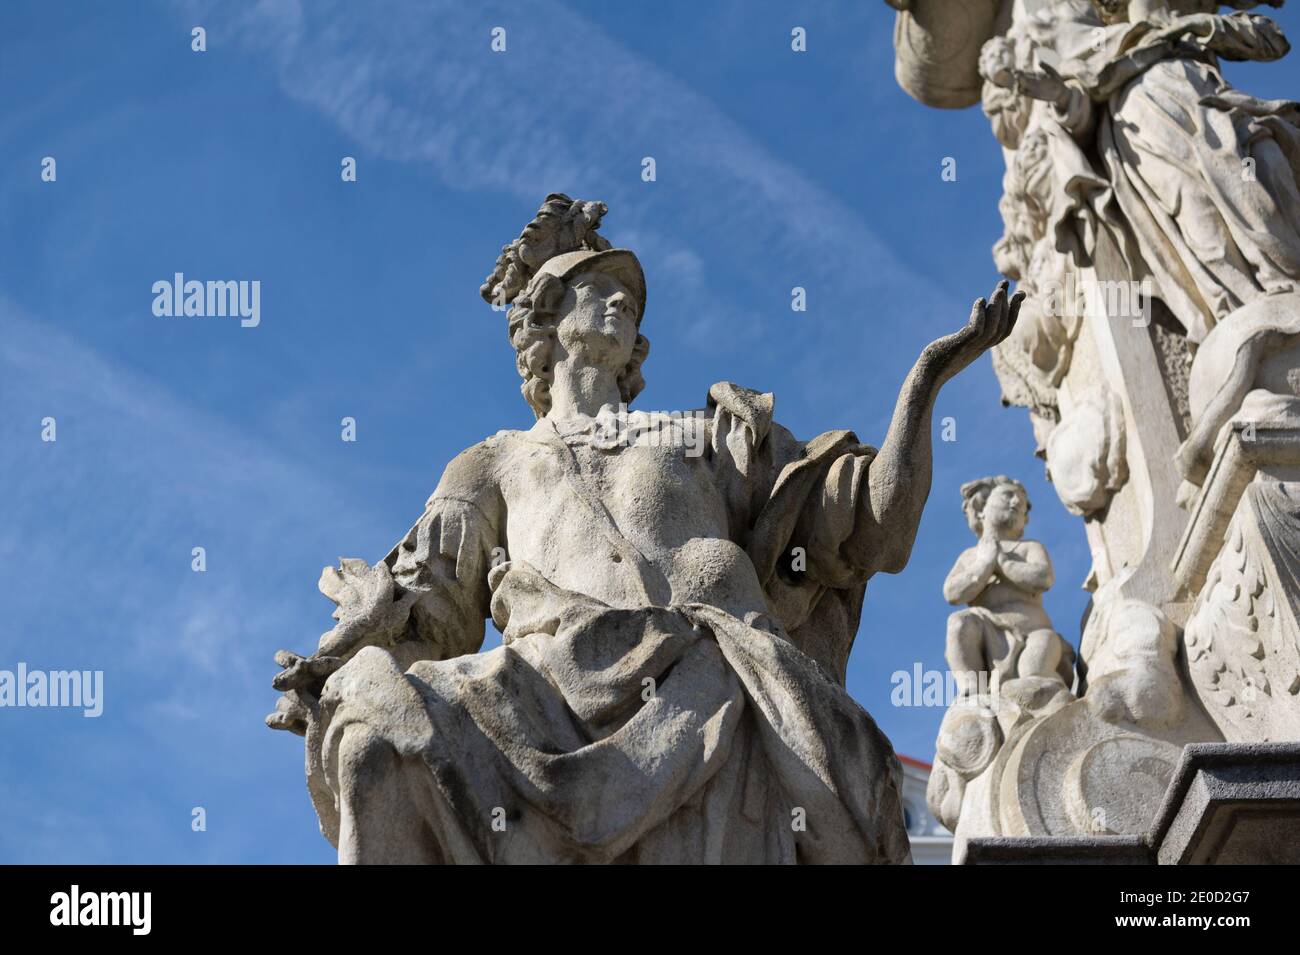 Estatua y escultura de San Primitiva, columna de la santísima trinidad, Brno, República Checa / República Checa - antiguo monumento y monumento histórico figural. Poco profundo f Foto de stock